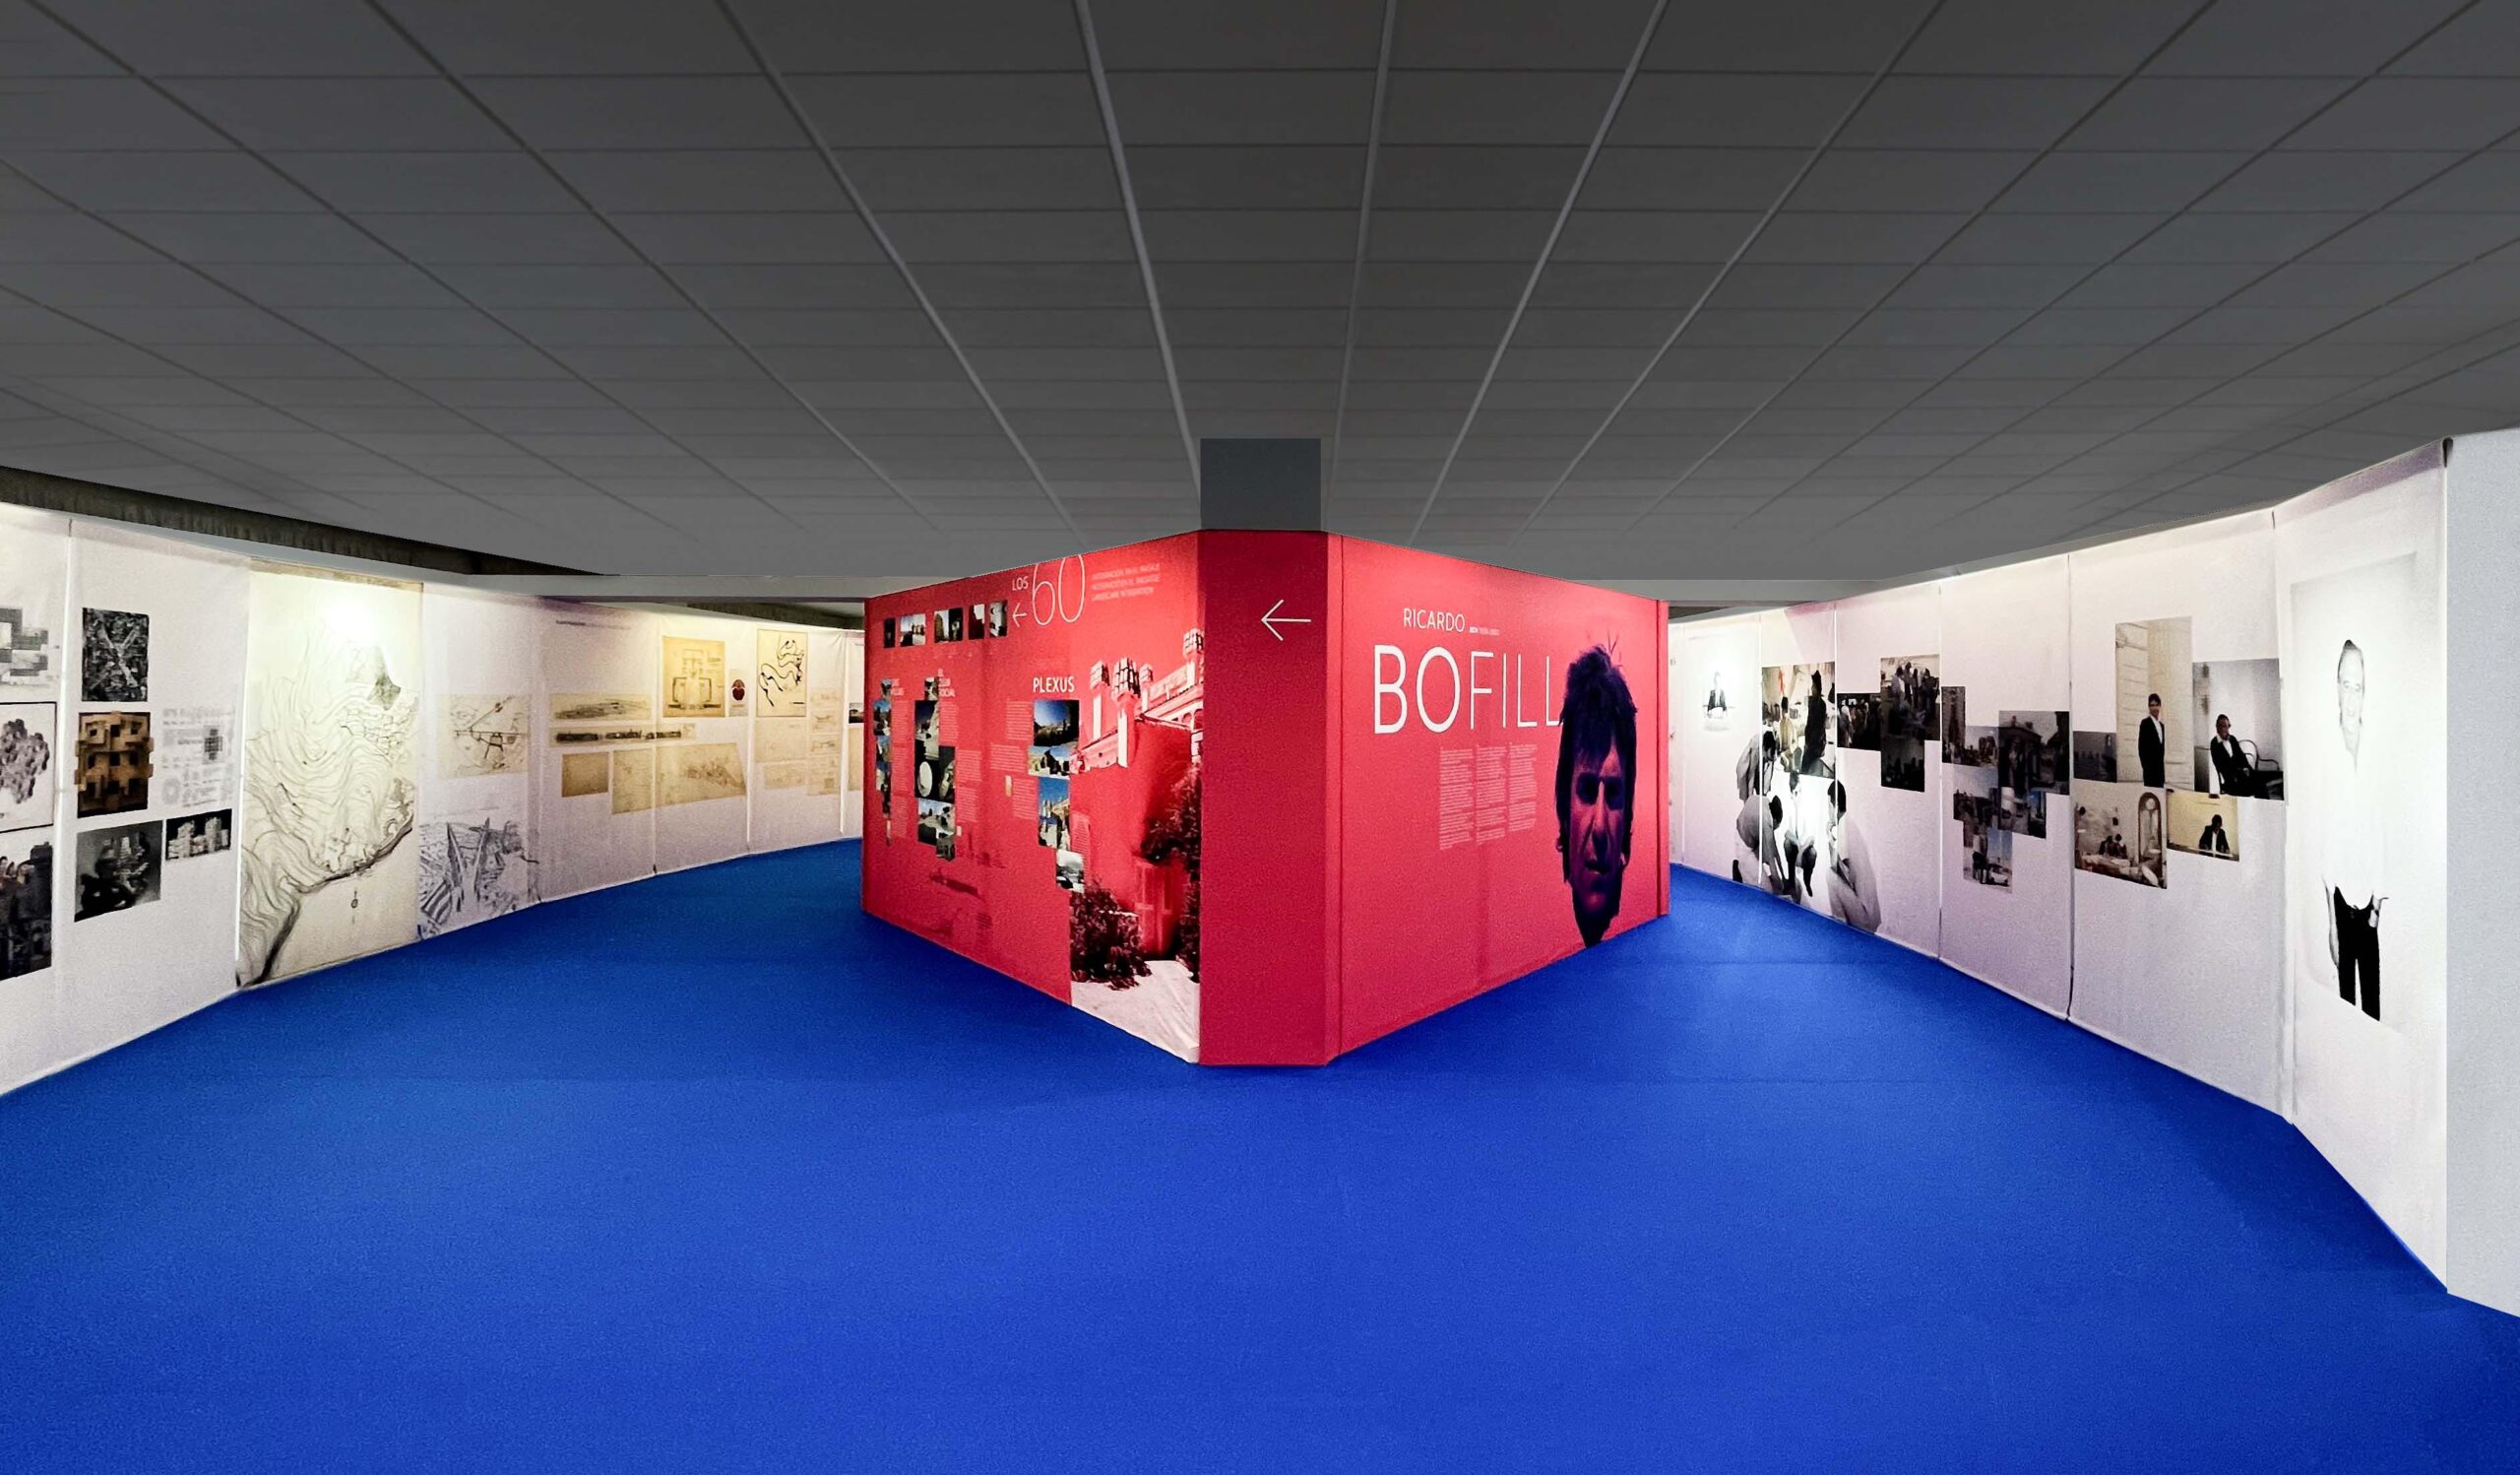 Diseño de exposición temporal que explora la relación inspiradora entre el arquitecto Ricardo Bofill y el pueblo de Calpe. Destaca el proyecto de La Manzanera como espacio experimental y la famosa Muralla Roja.